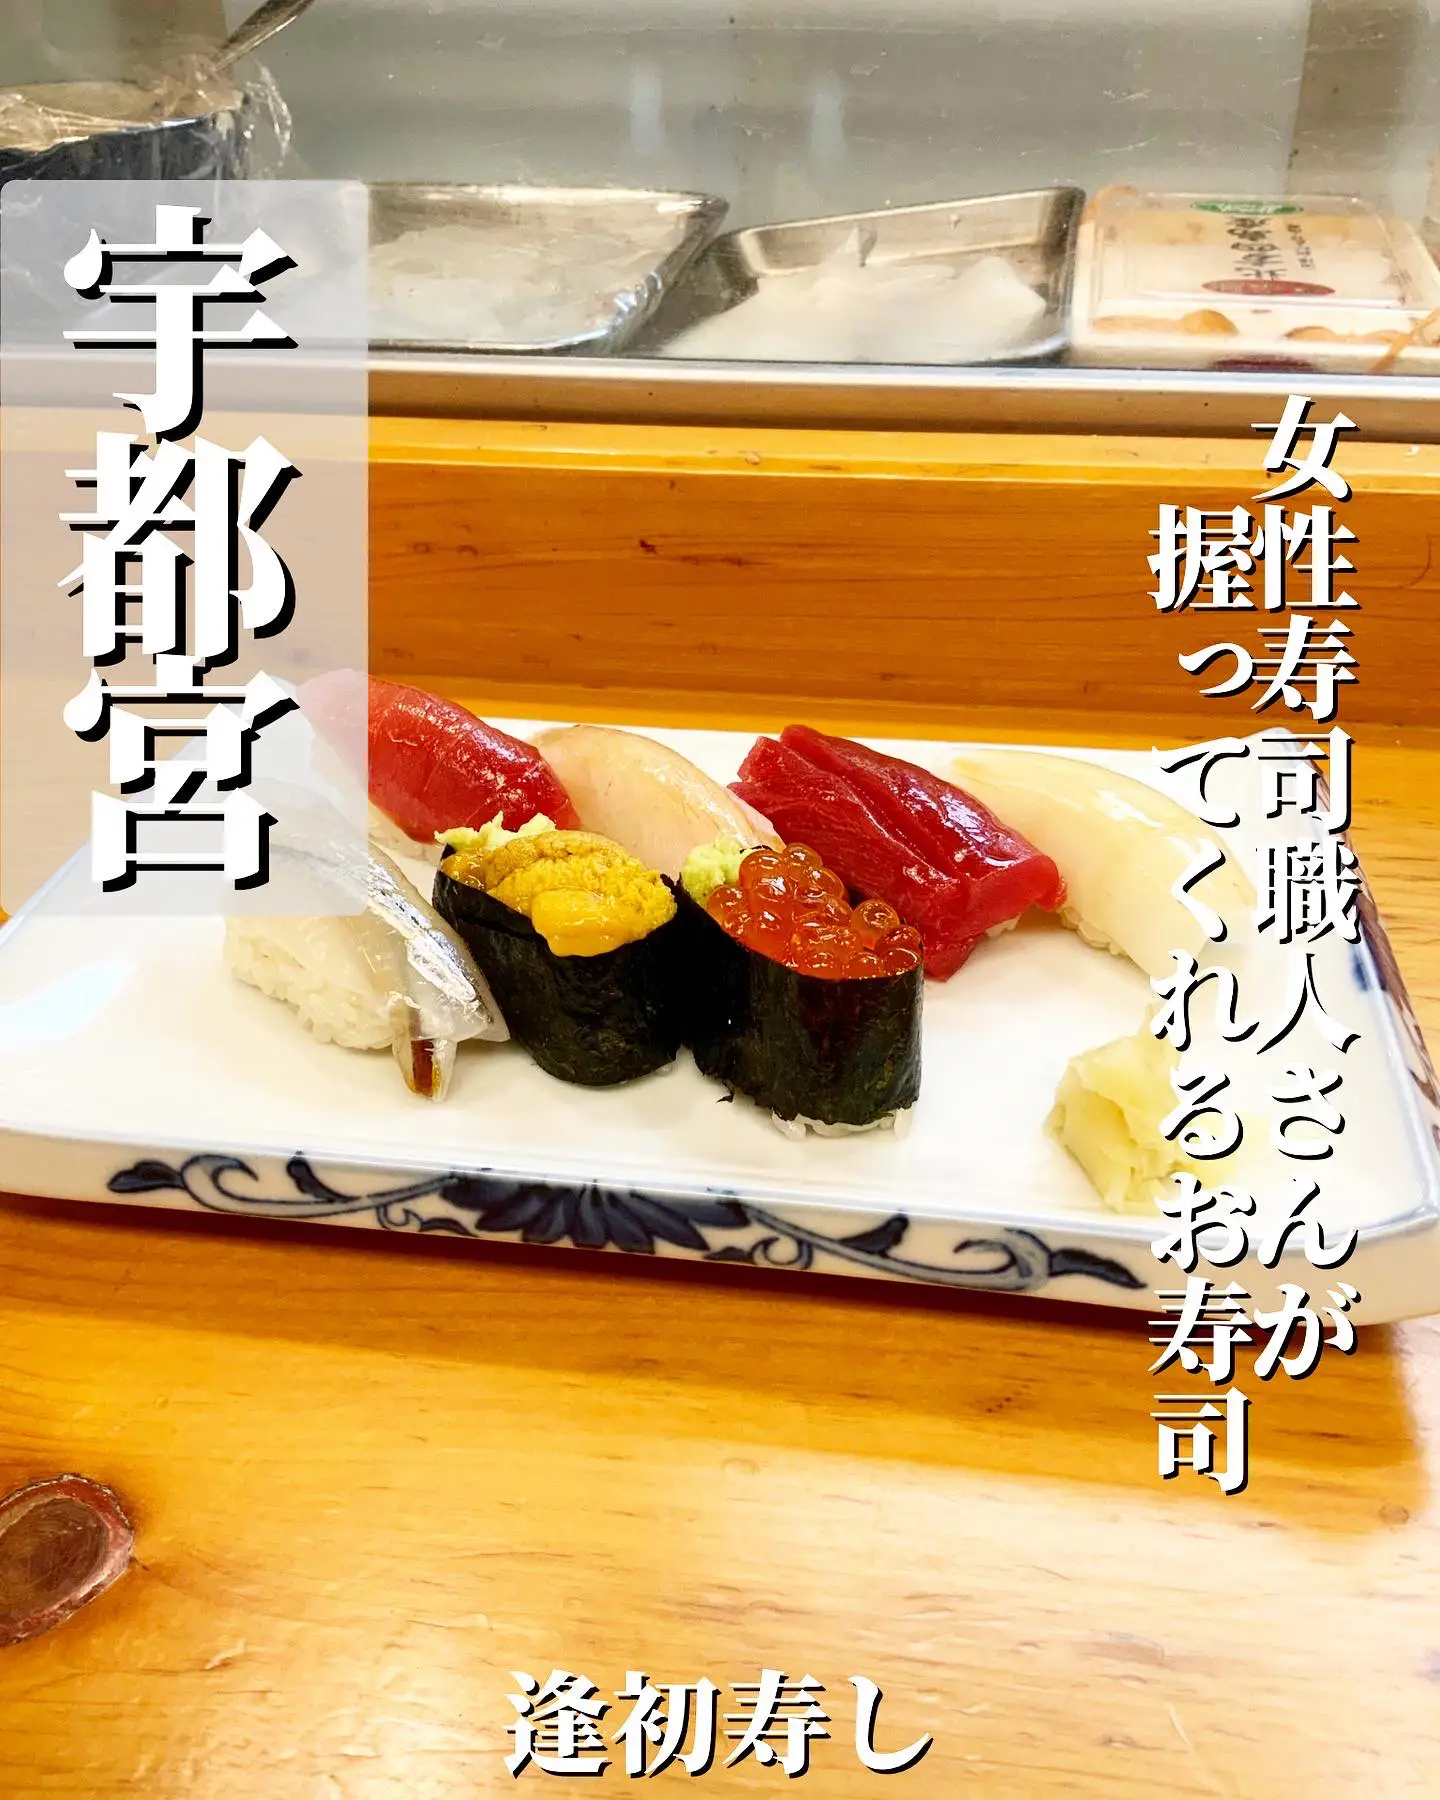 DIY Sushi Kit with Sashimi Grade Fish - Diaries Of Master Sushi Chef